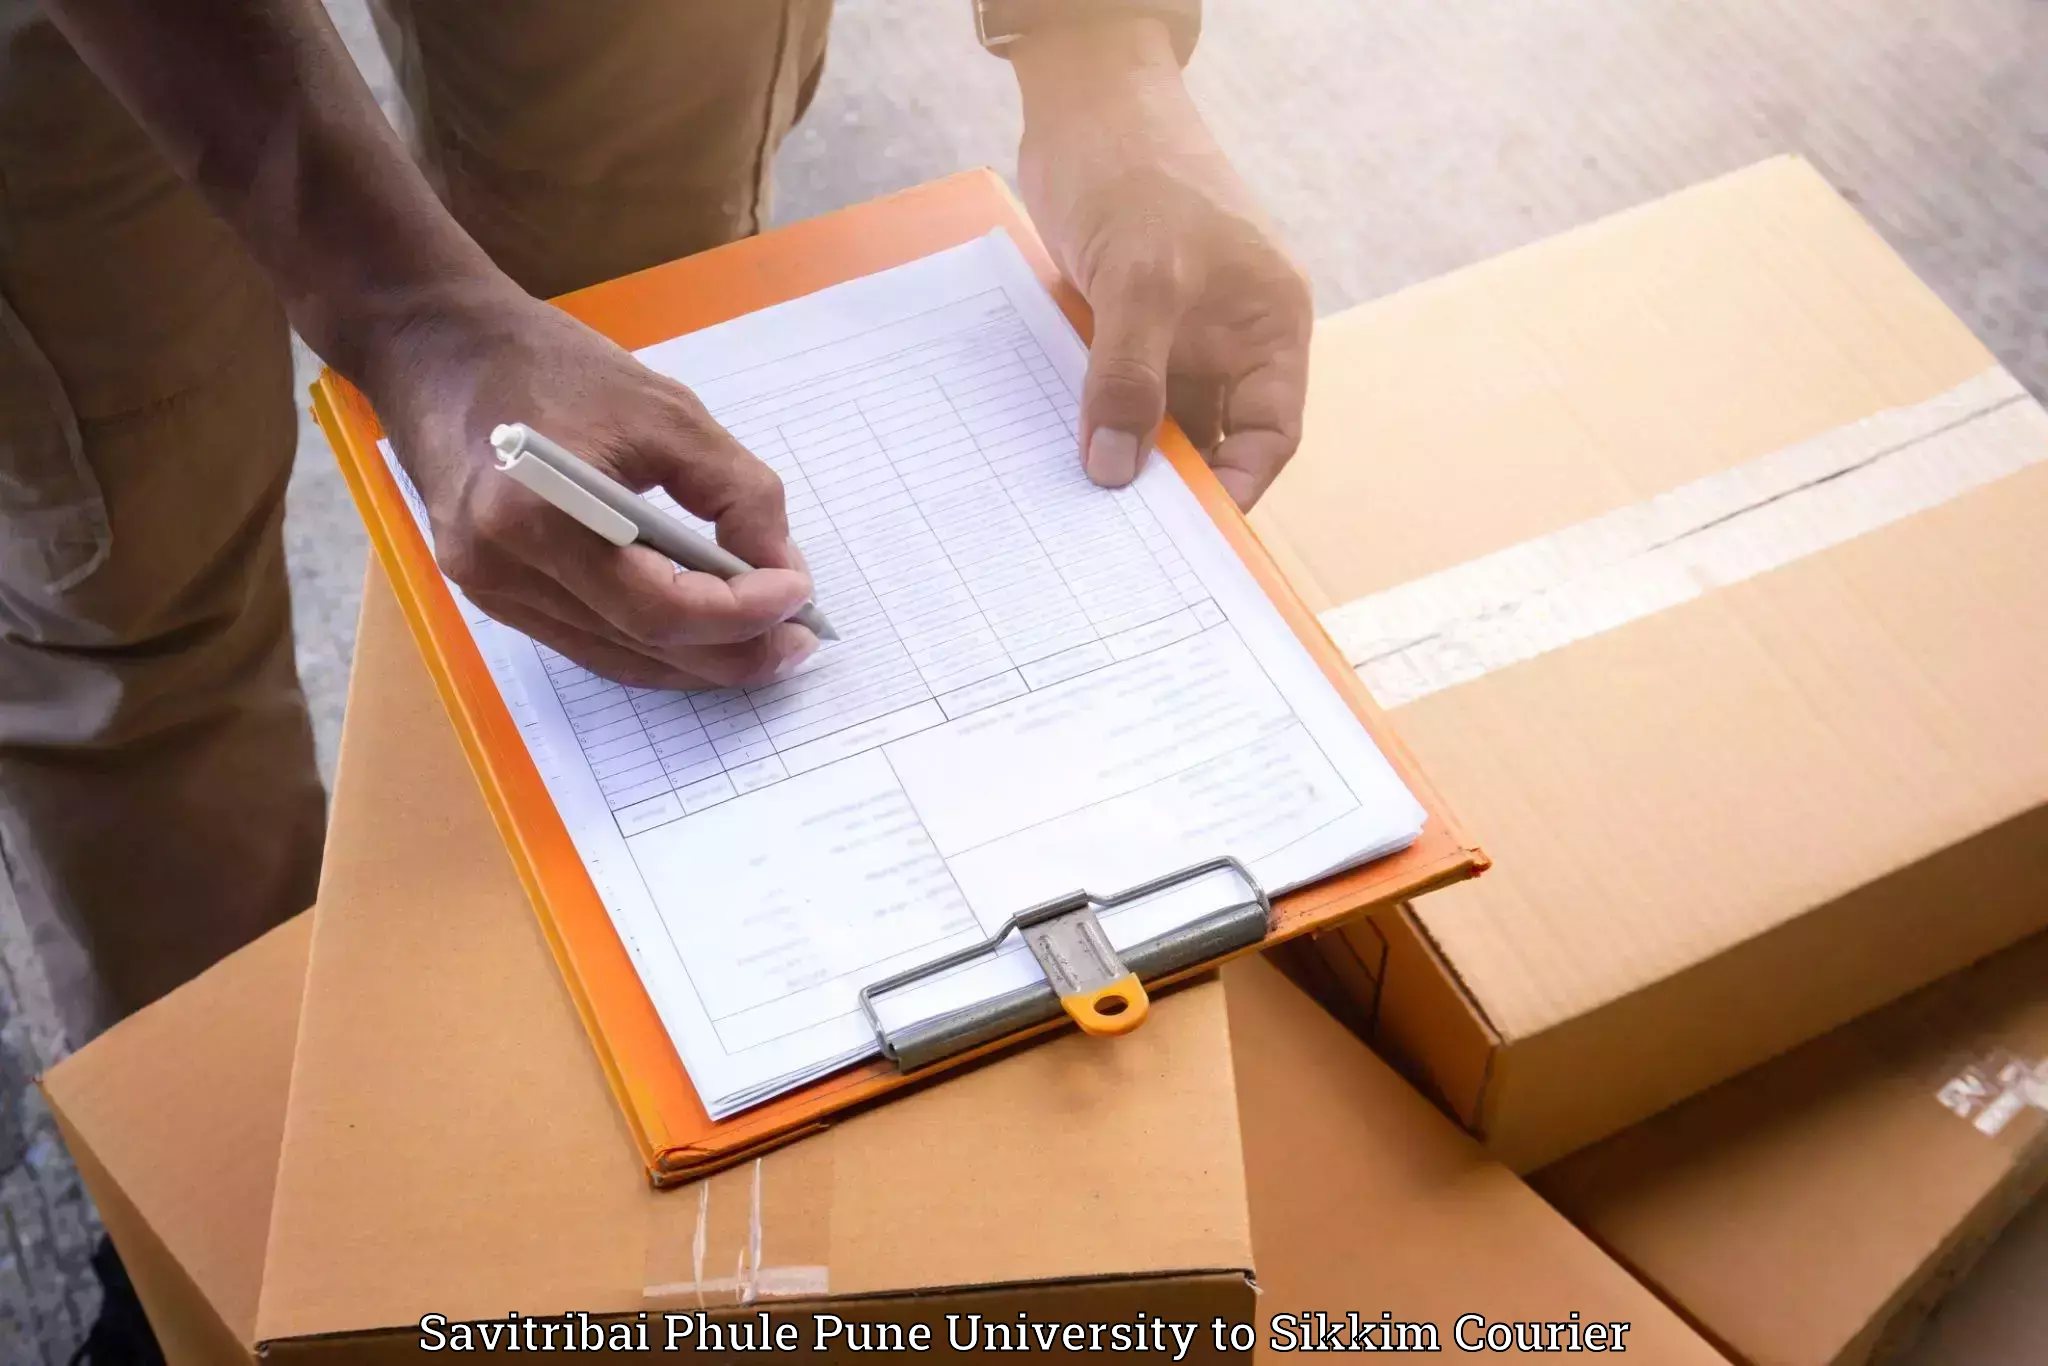 Furniture moving specialists Savitribai Phule Pune University to Namchi